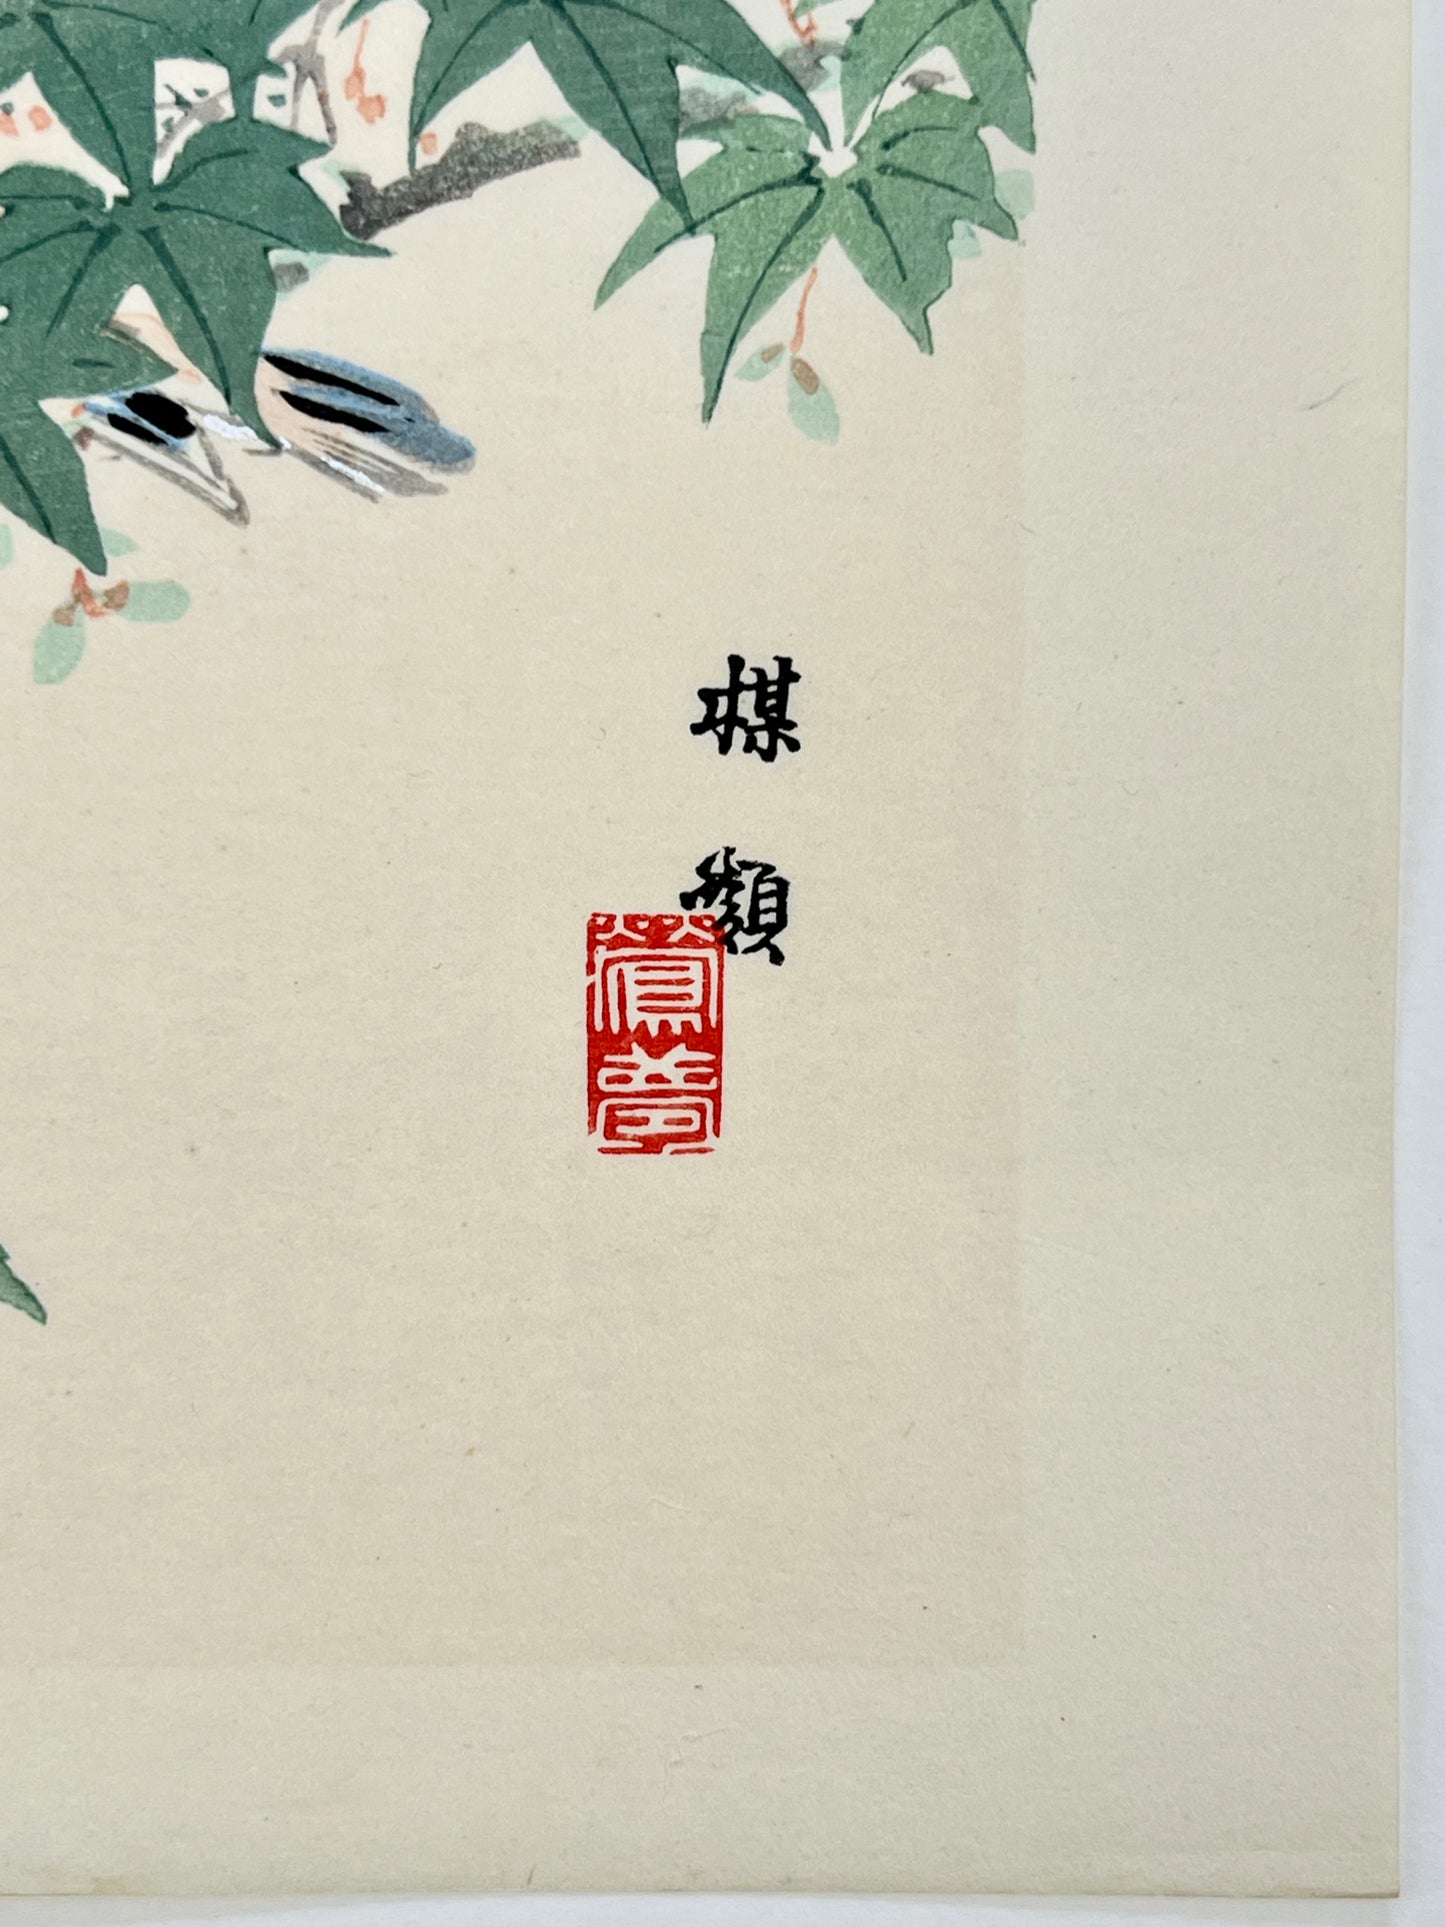 estampe japonaise oiseau sur une branche d'érable vert, la signature de l'artiste